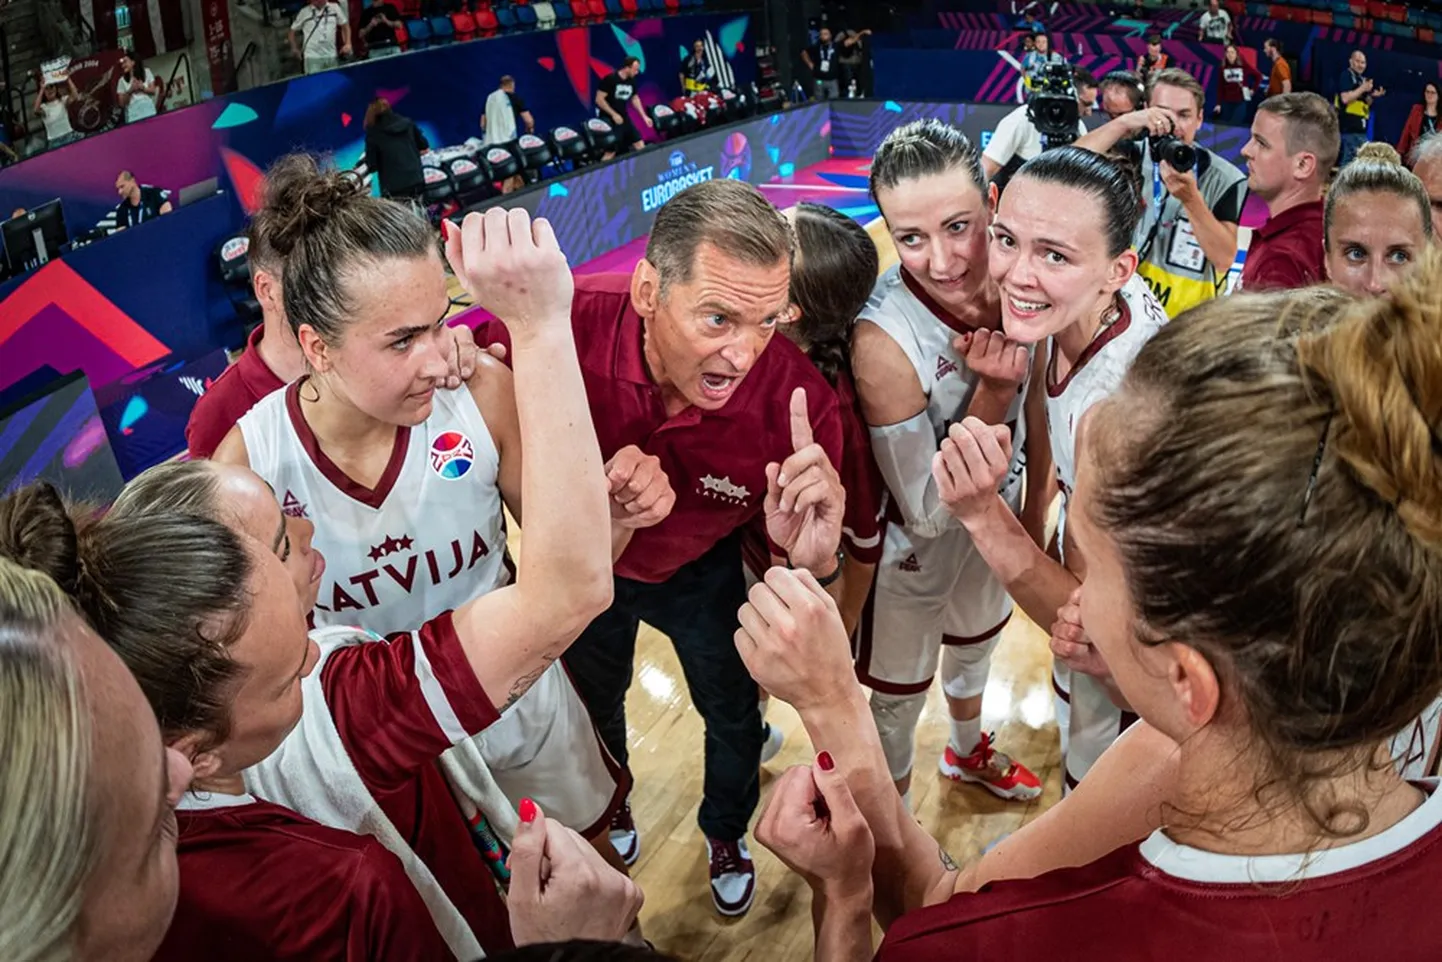 Latvijas sieviešu basketbola izlase